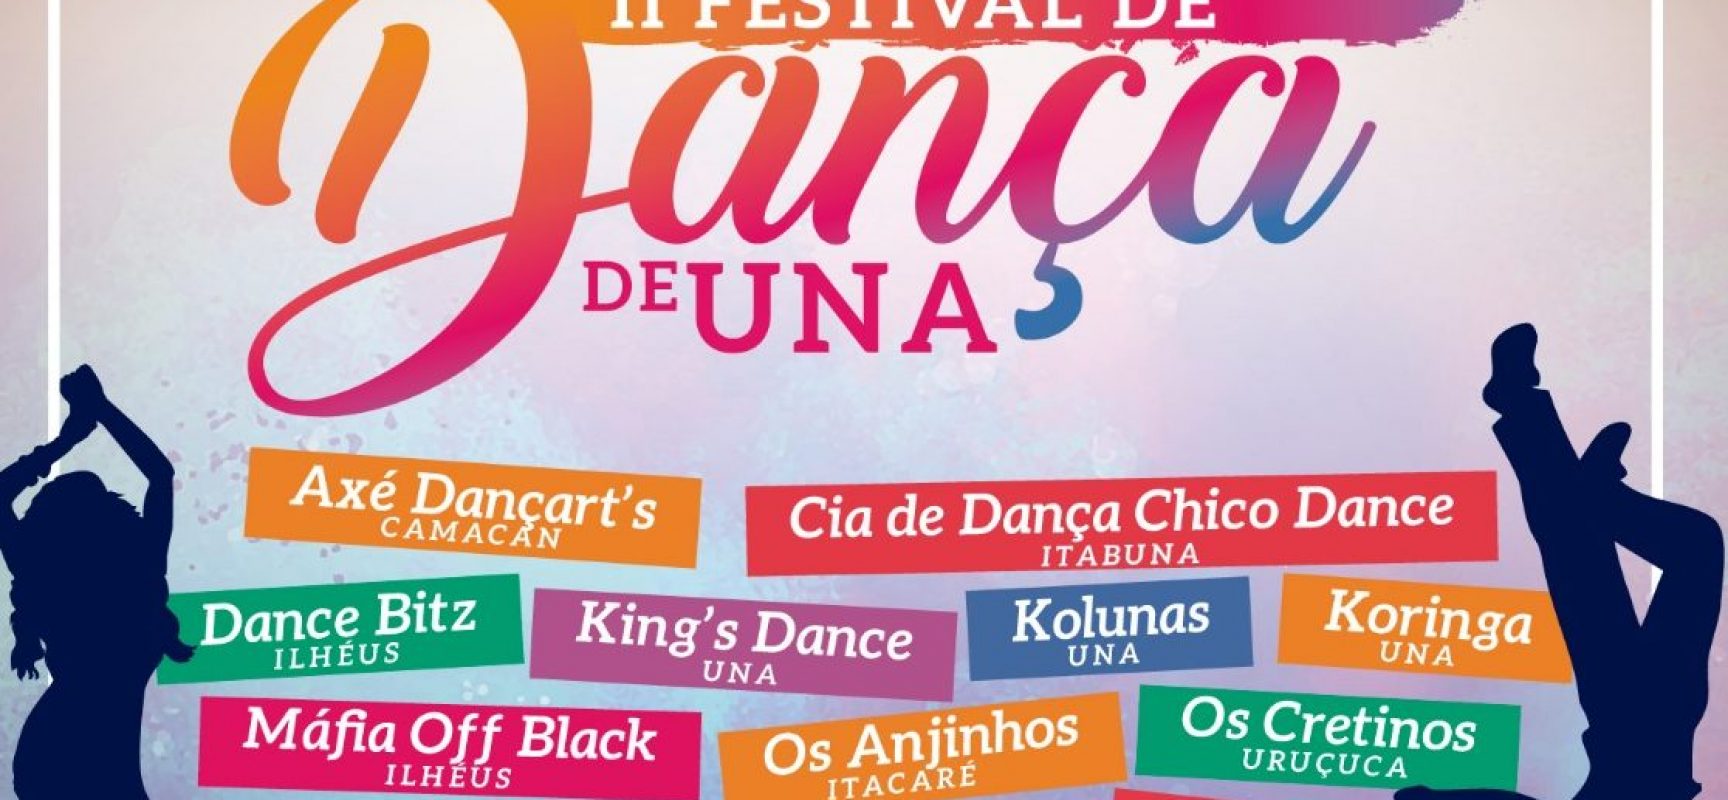 Festival de Dança de Una vai mobilizar dançarinos da região sul do estado